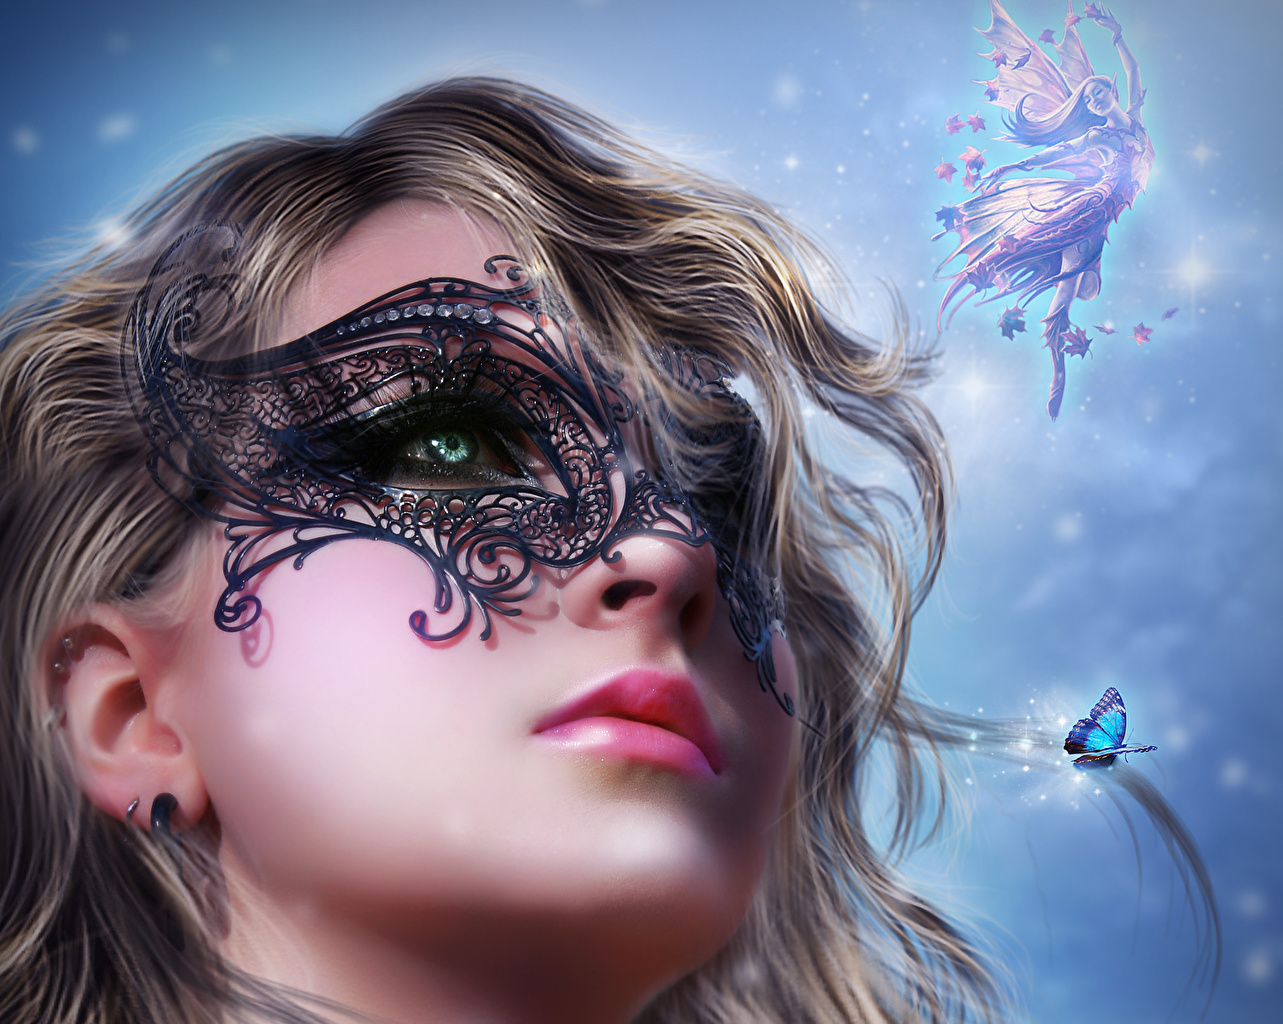 Art Fantasy Girl Face - HD Wallpaper 